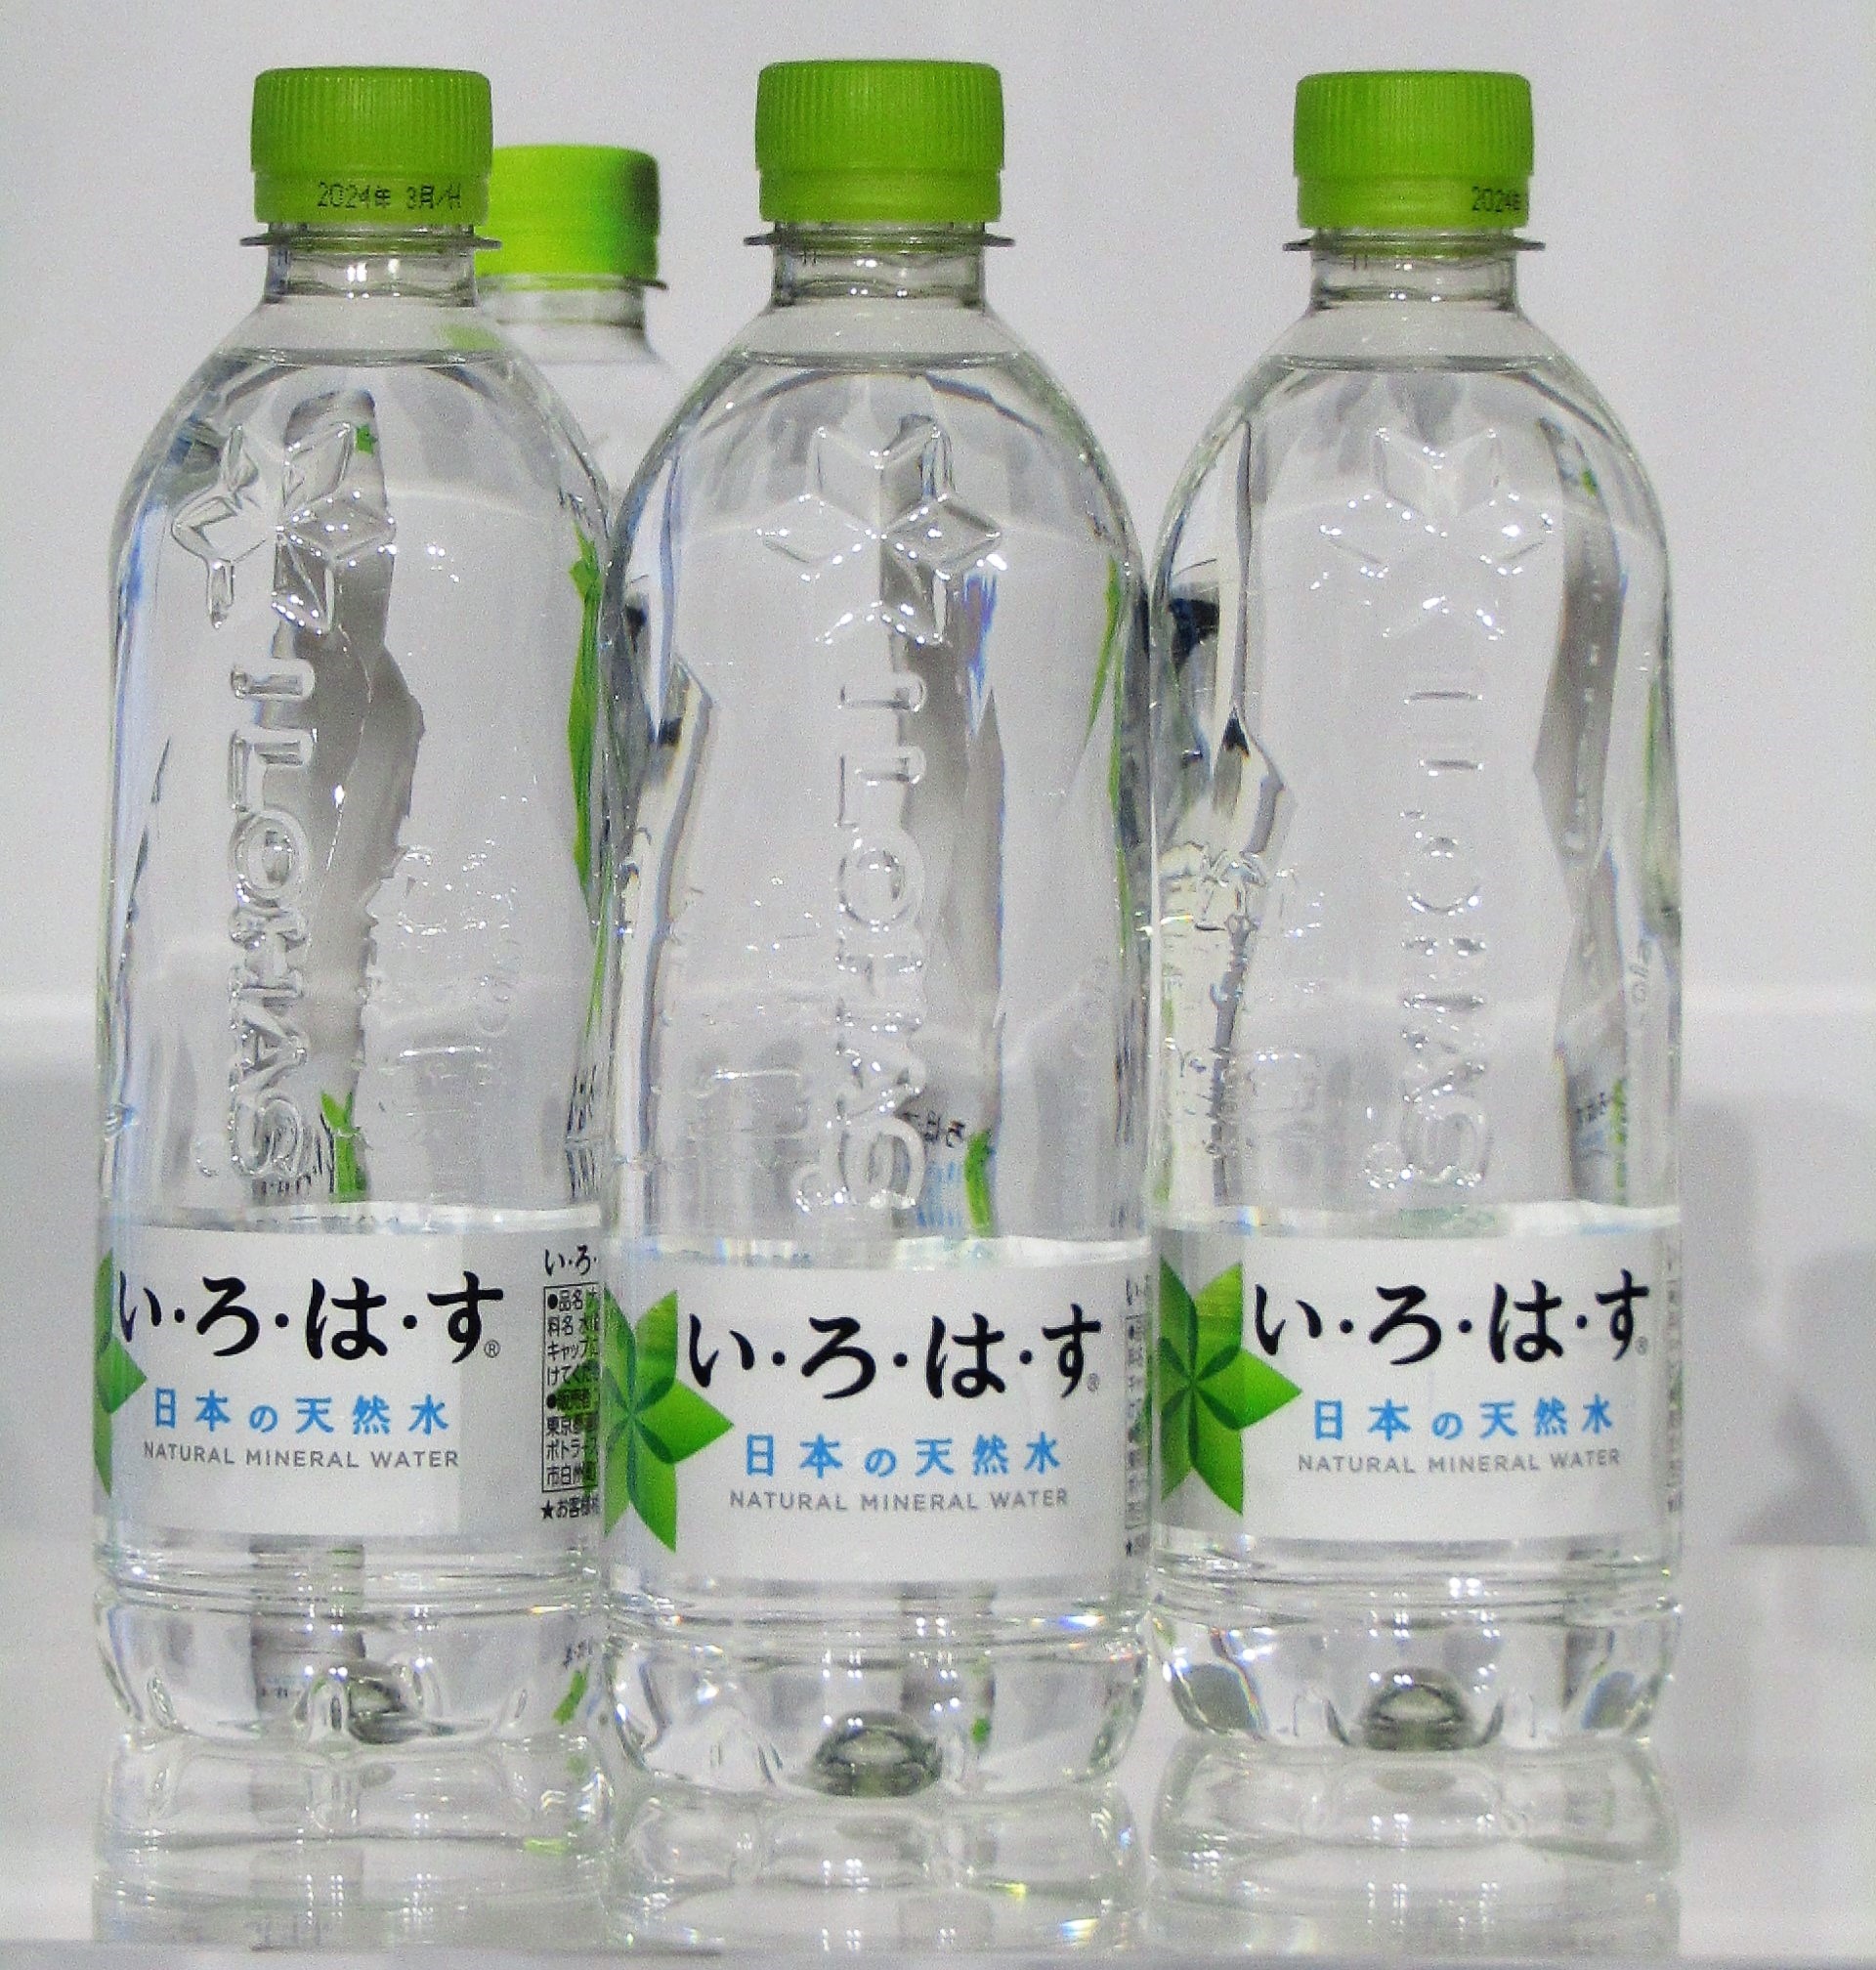 い・ろ・は・す」平たくたためる新ボトルを全国展開 2009年のブランド